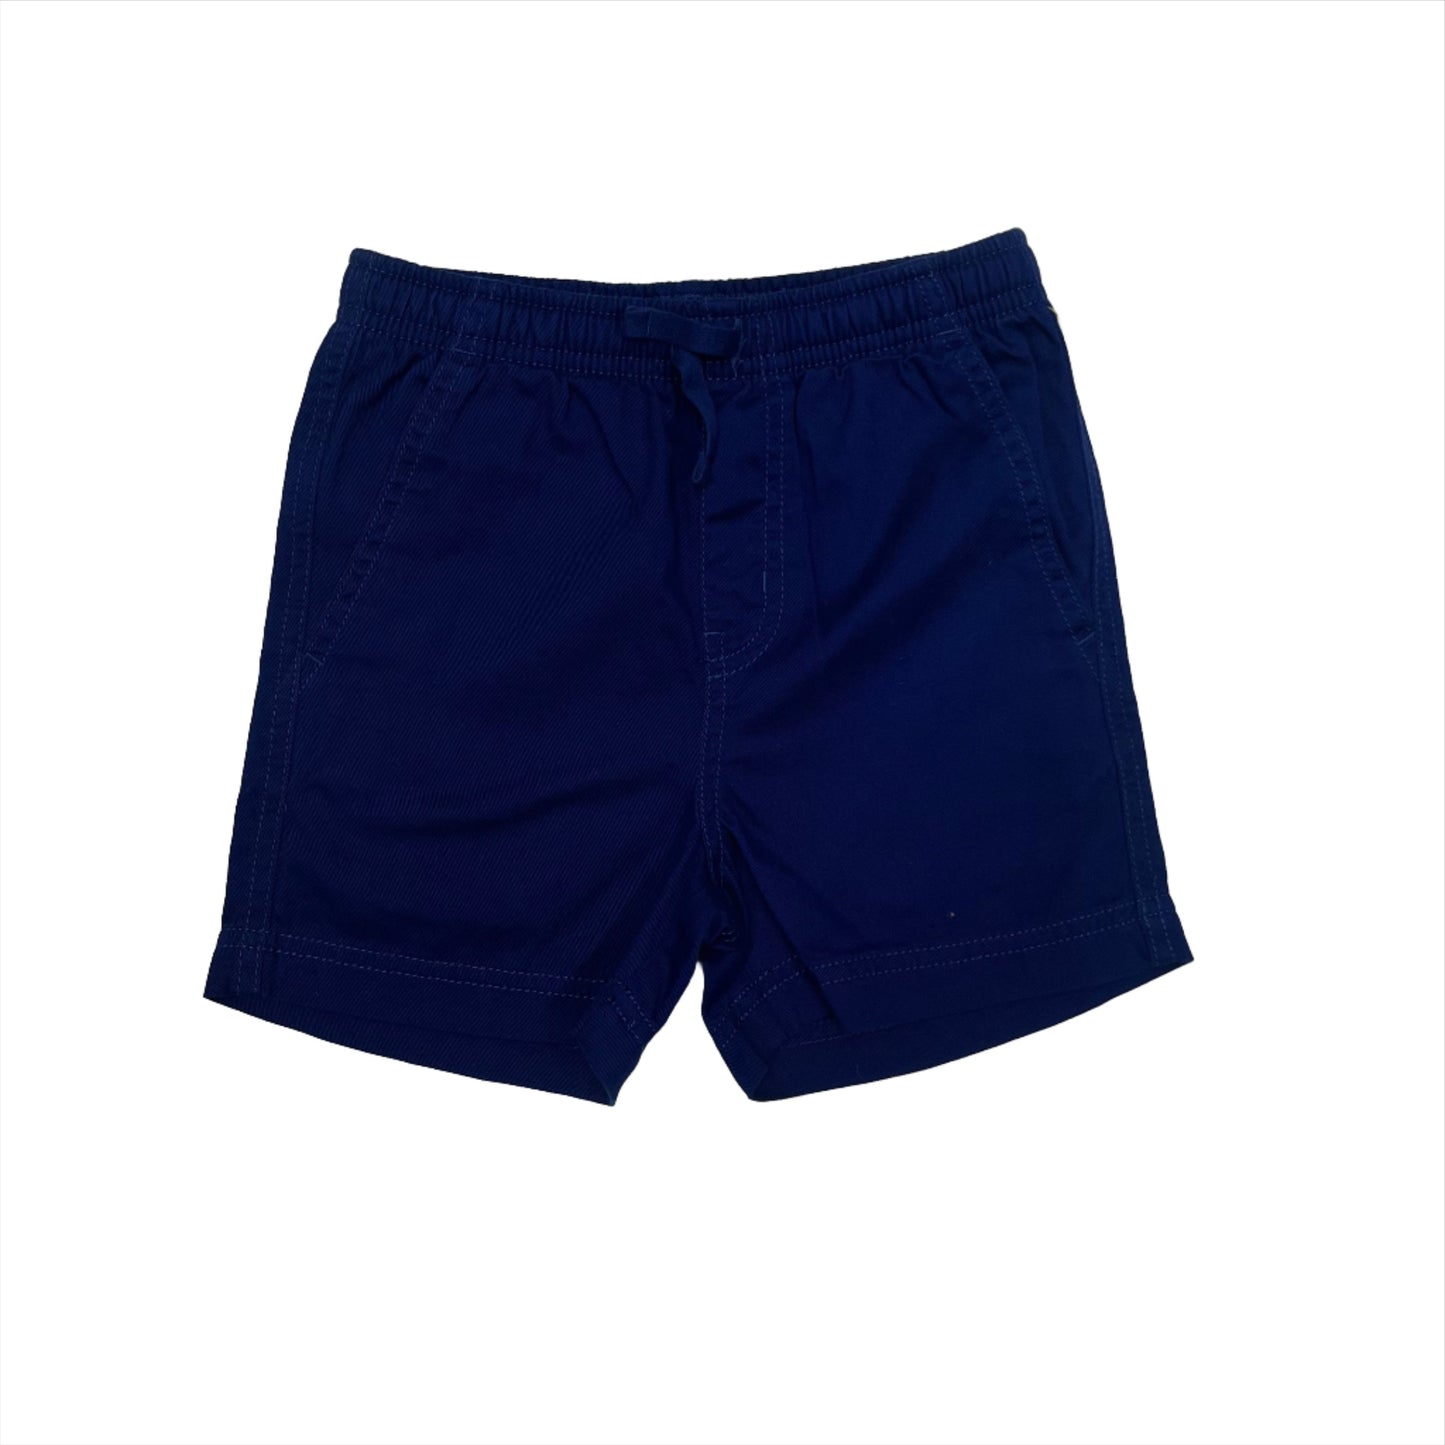 Nightfall Twill Sport Shorts (Baby)